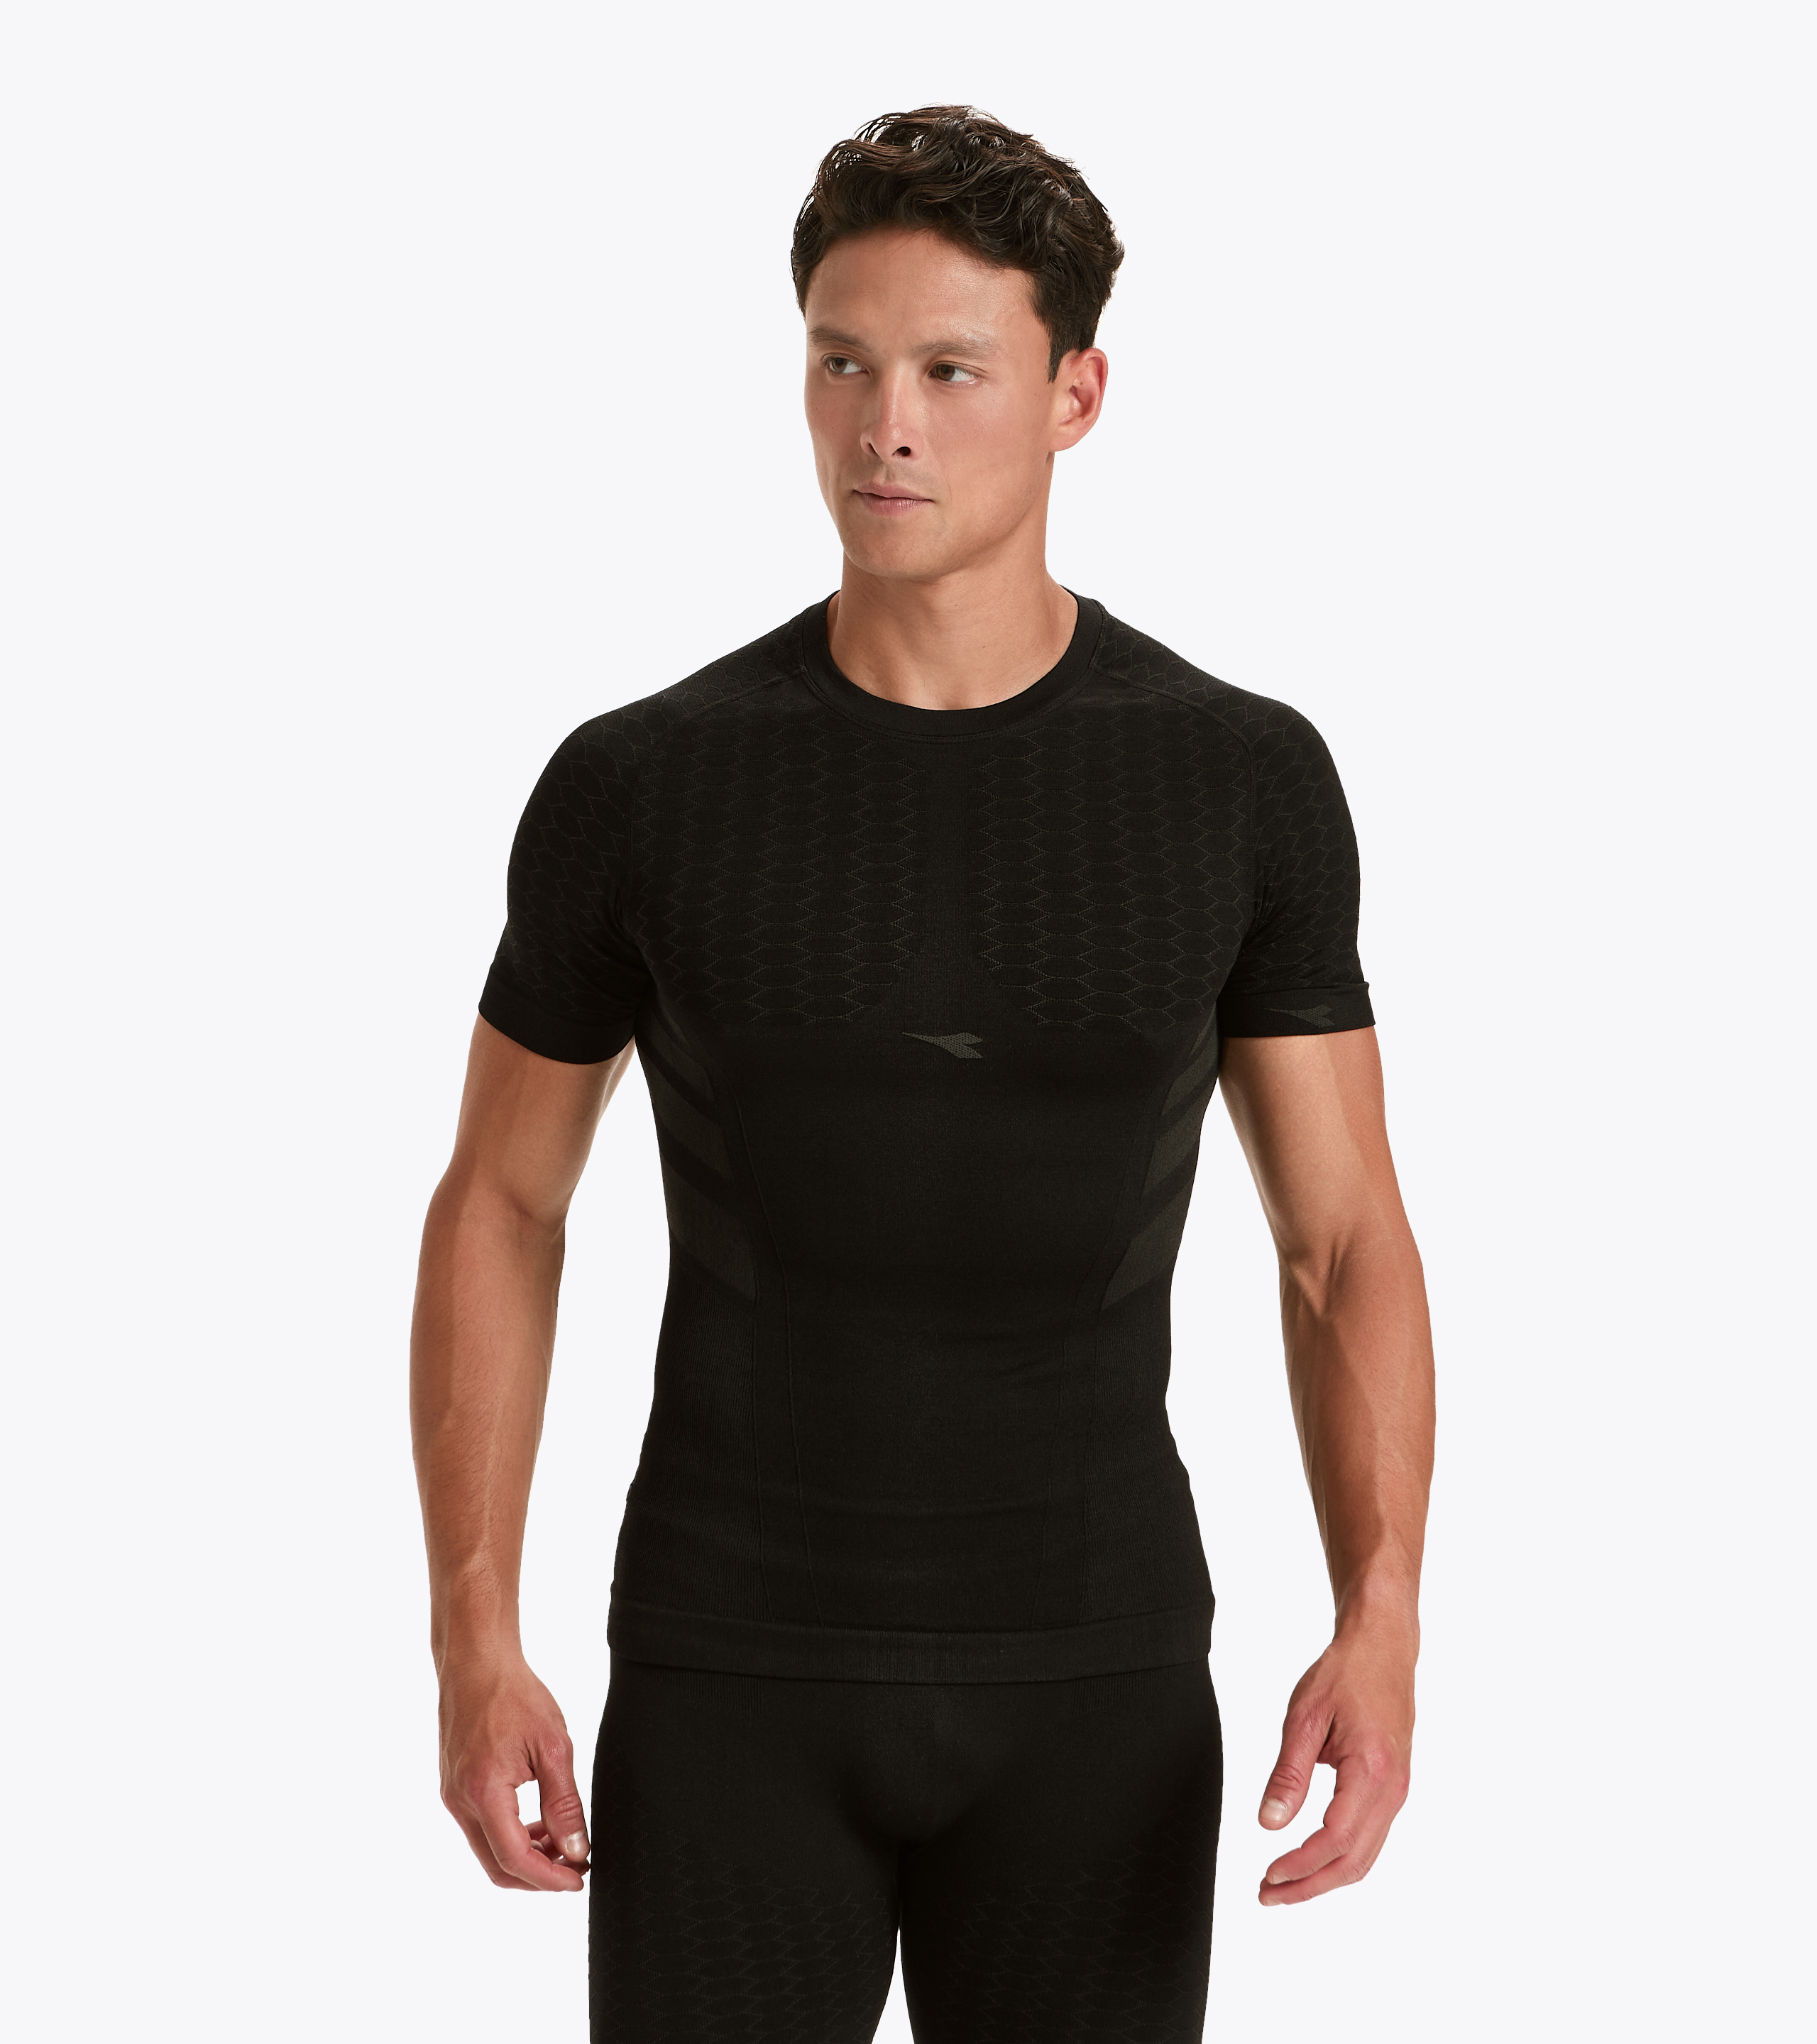 SS T-SHIRT ACT Short-sleeved training t-shirt - Men - Diadora Online Store  US